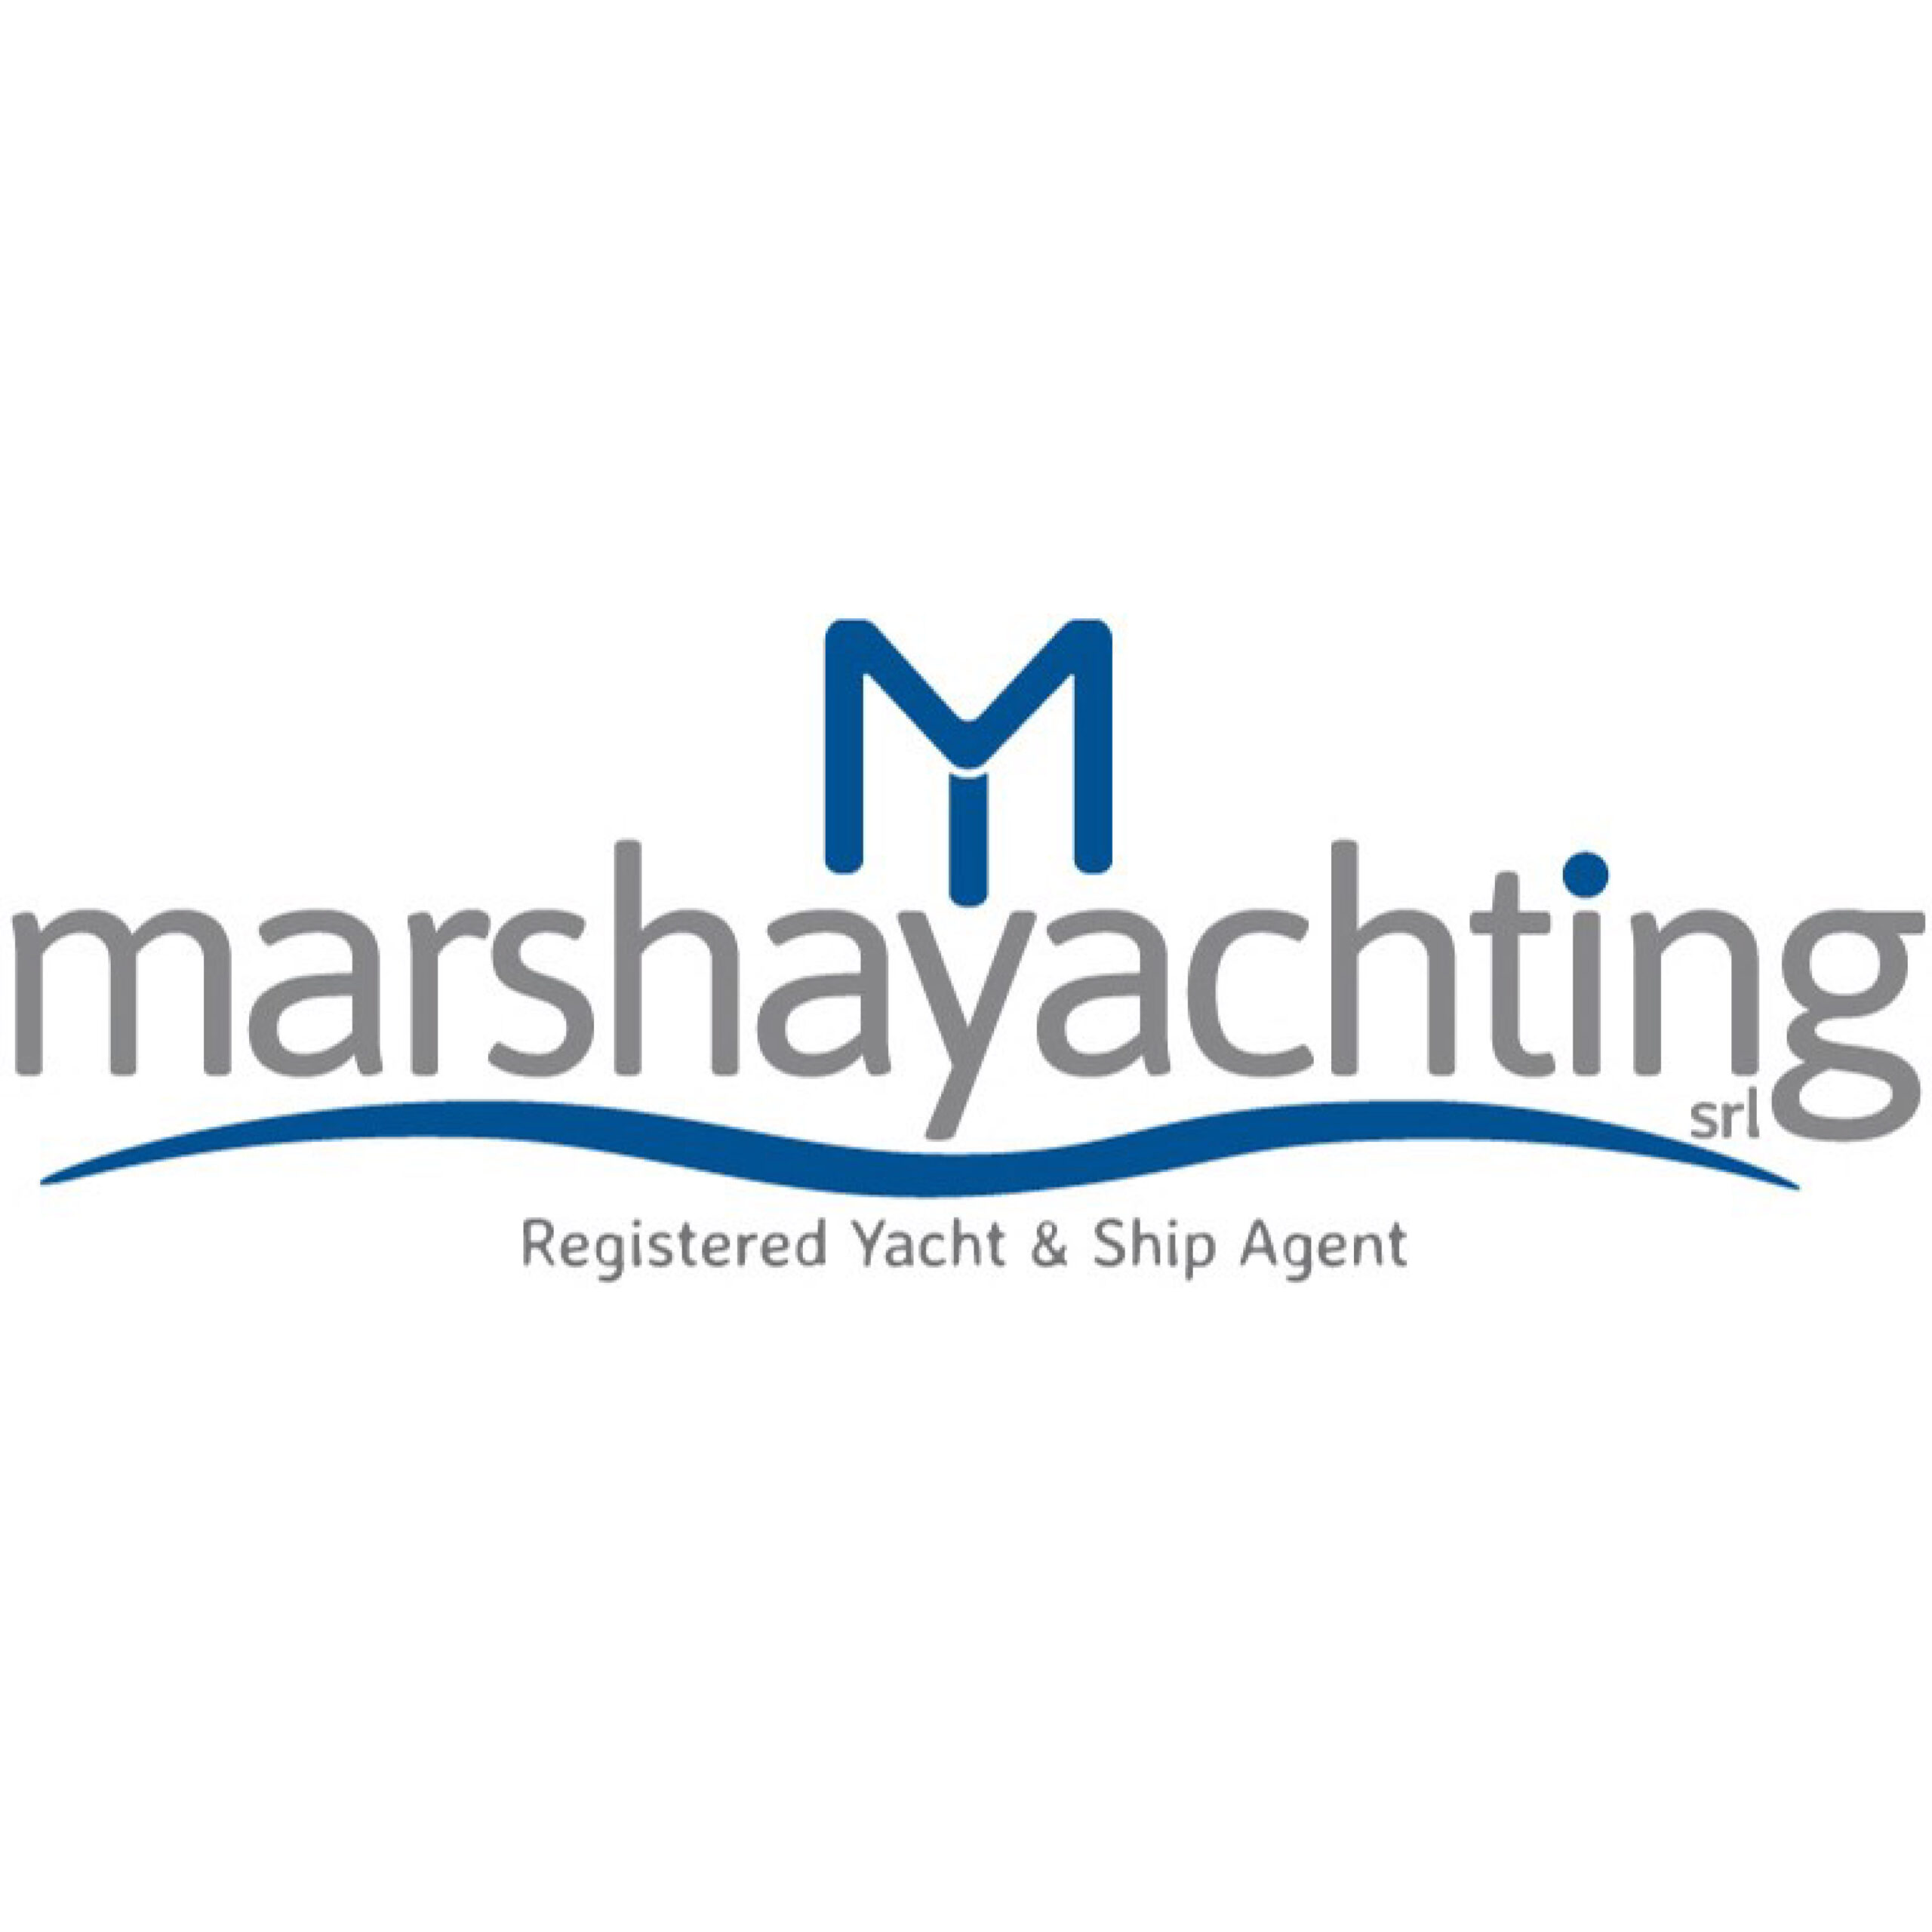 Marsha Yachting srl